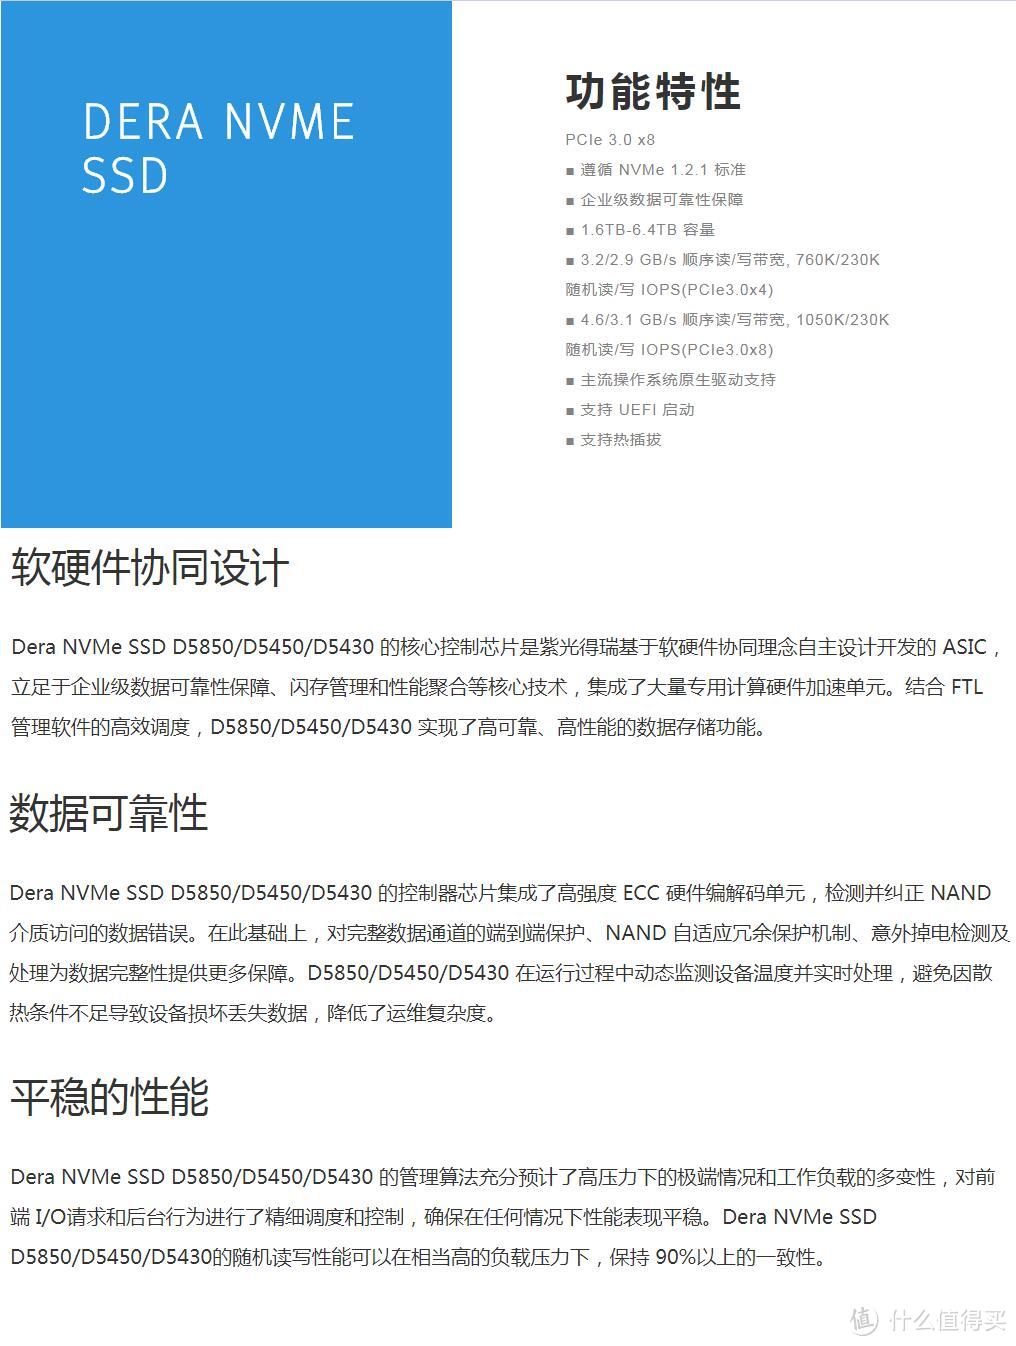 #本站首晒#中国智造再下一城！国产PCIe NVMe SSD固态硬盘—UNISLAN 紫光 得瑞 DERA D5450 测评！